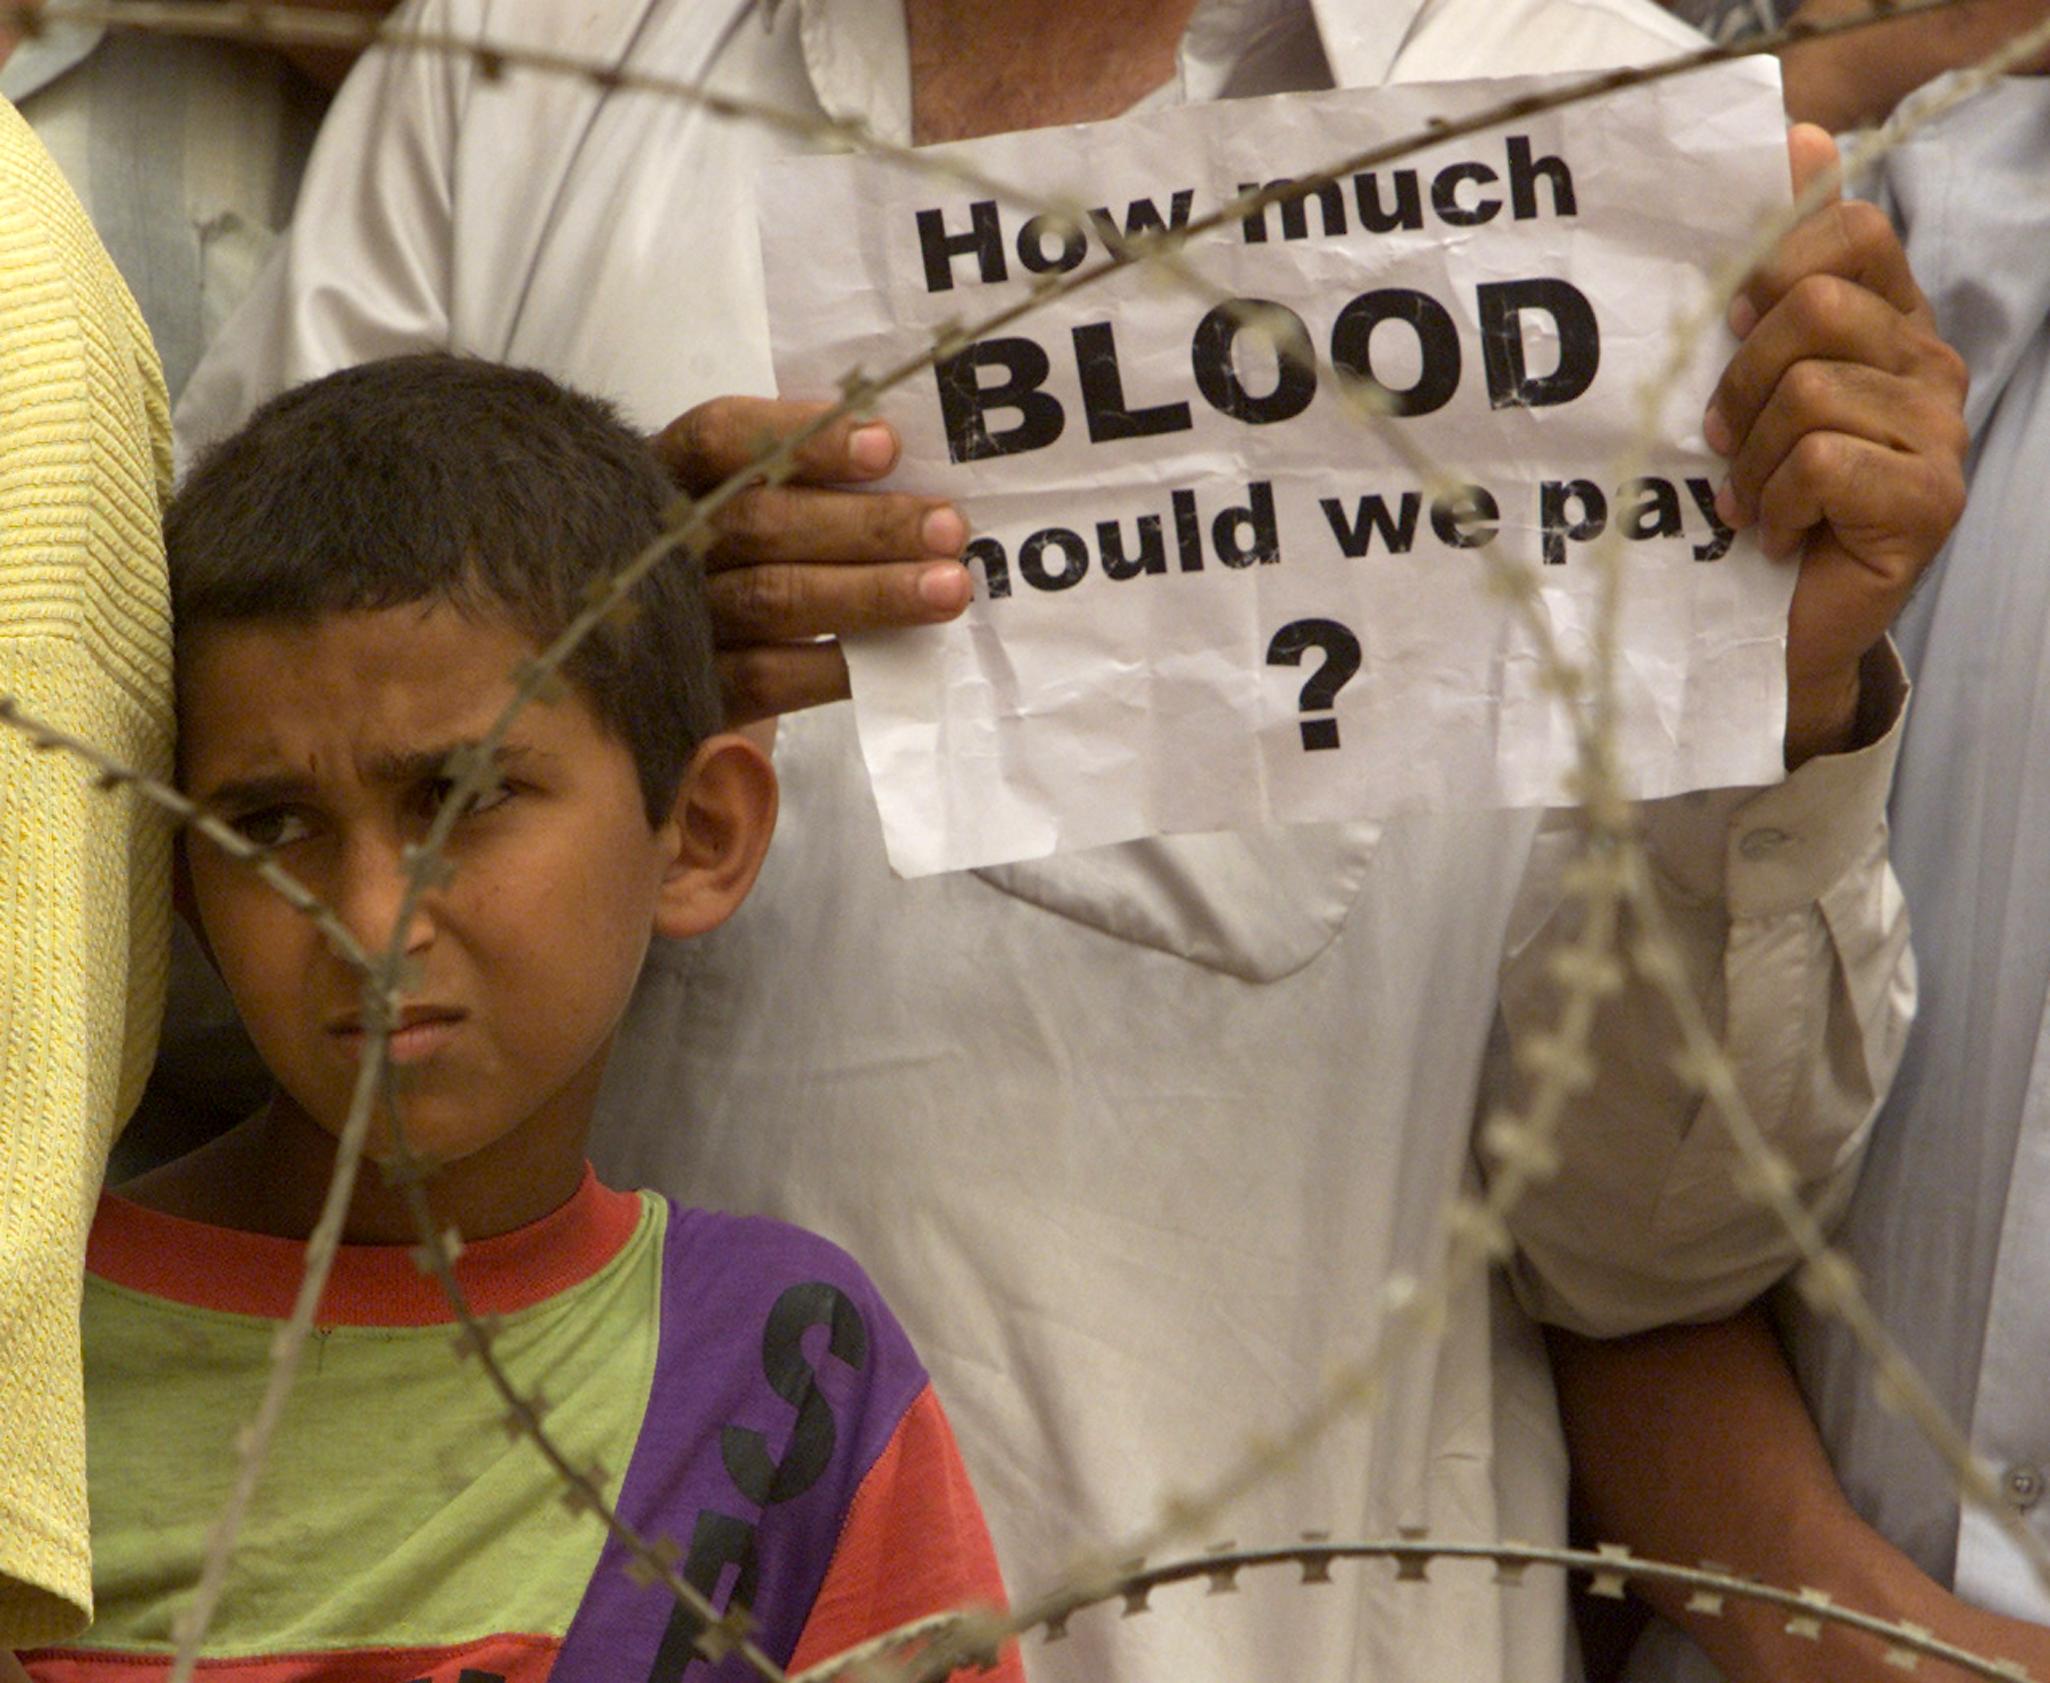 mężczyzna trzyma kartkę z napisem „How much blood should we pay?", obok stoi dziecko